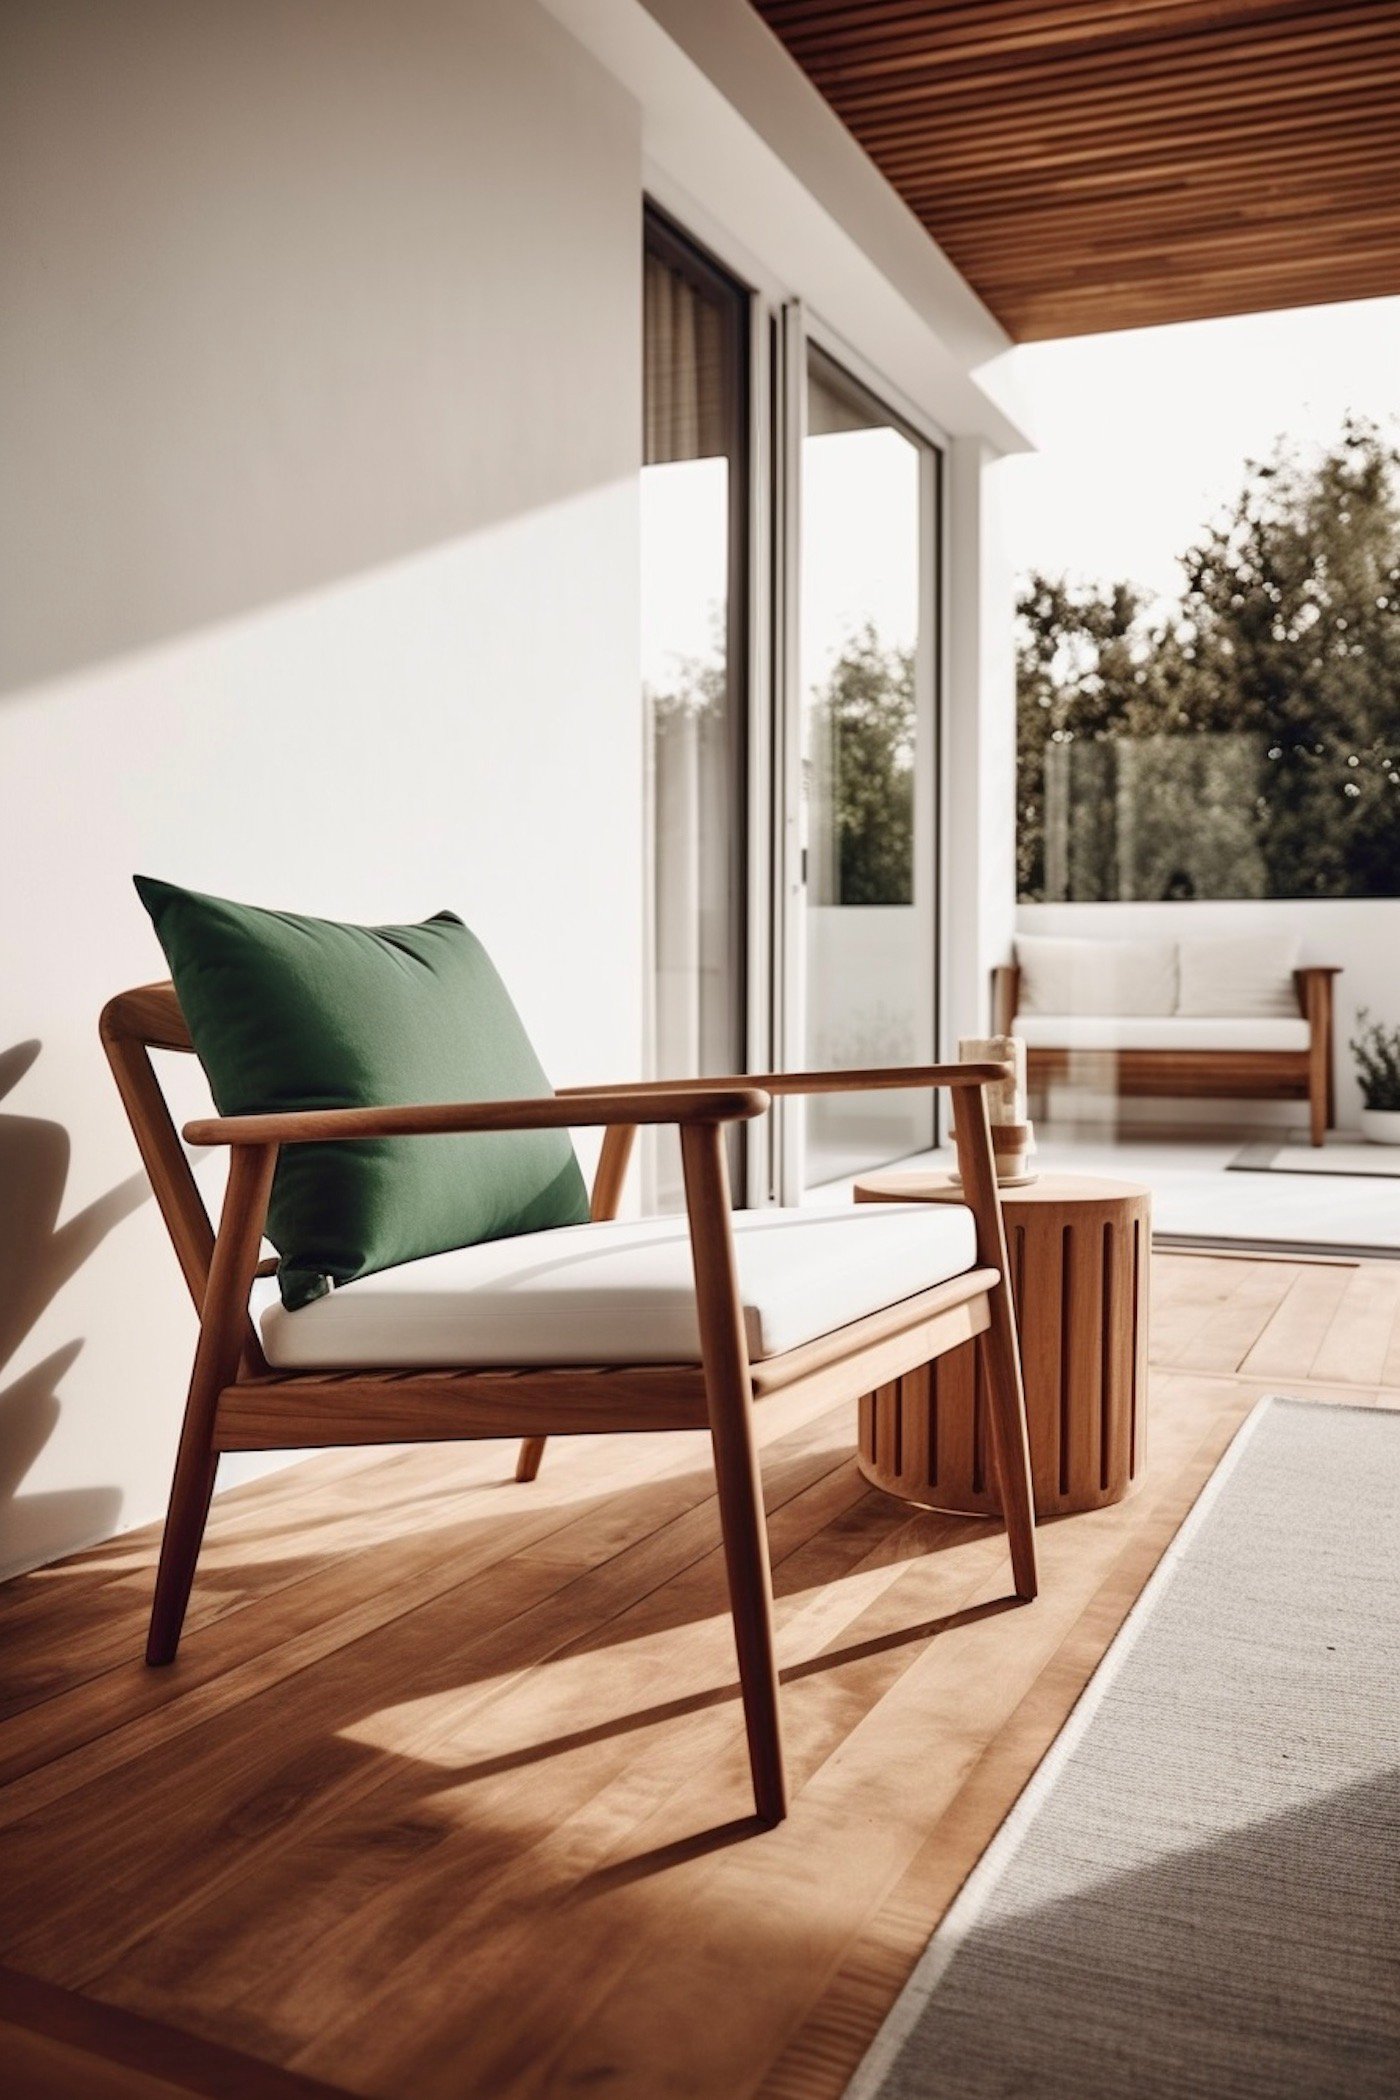 Comment savoir si un fauteuil de terrasse en bois est confortable